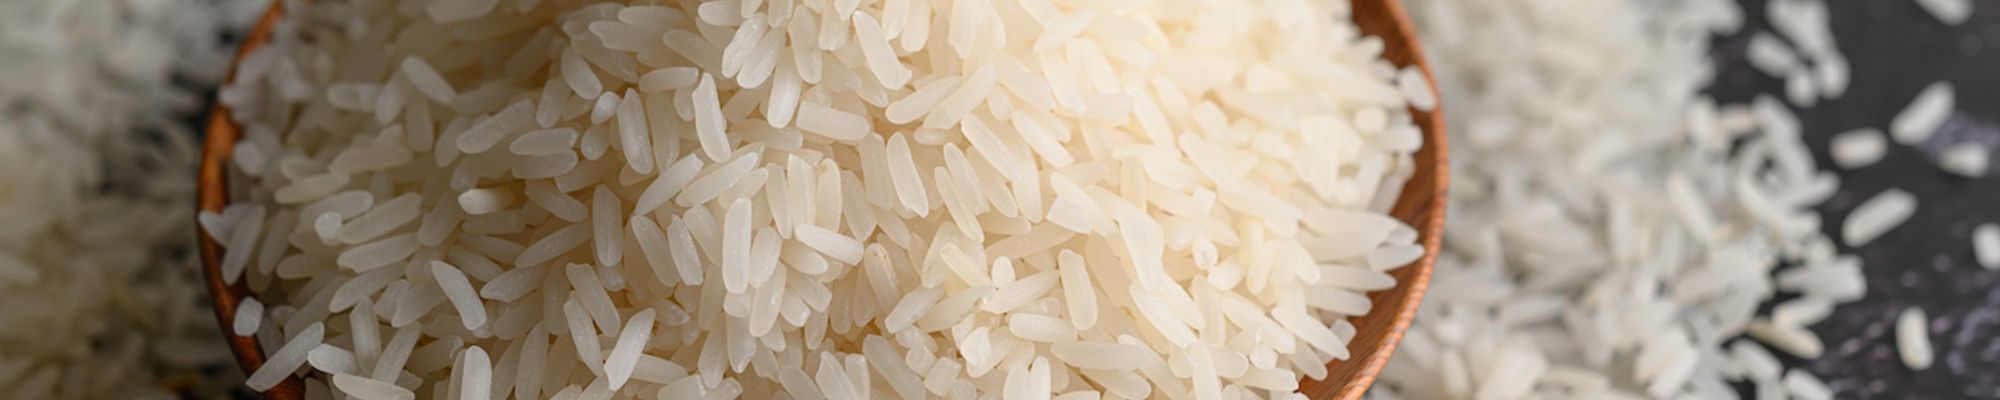 Je hnedá ryža lepšia ako biela, je to opačne, alebo aká je vlastne pravda?